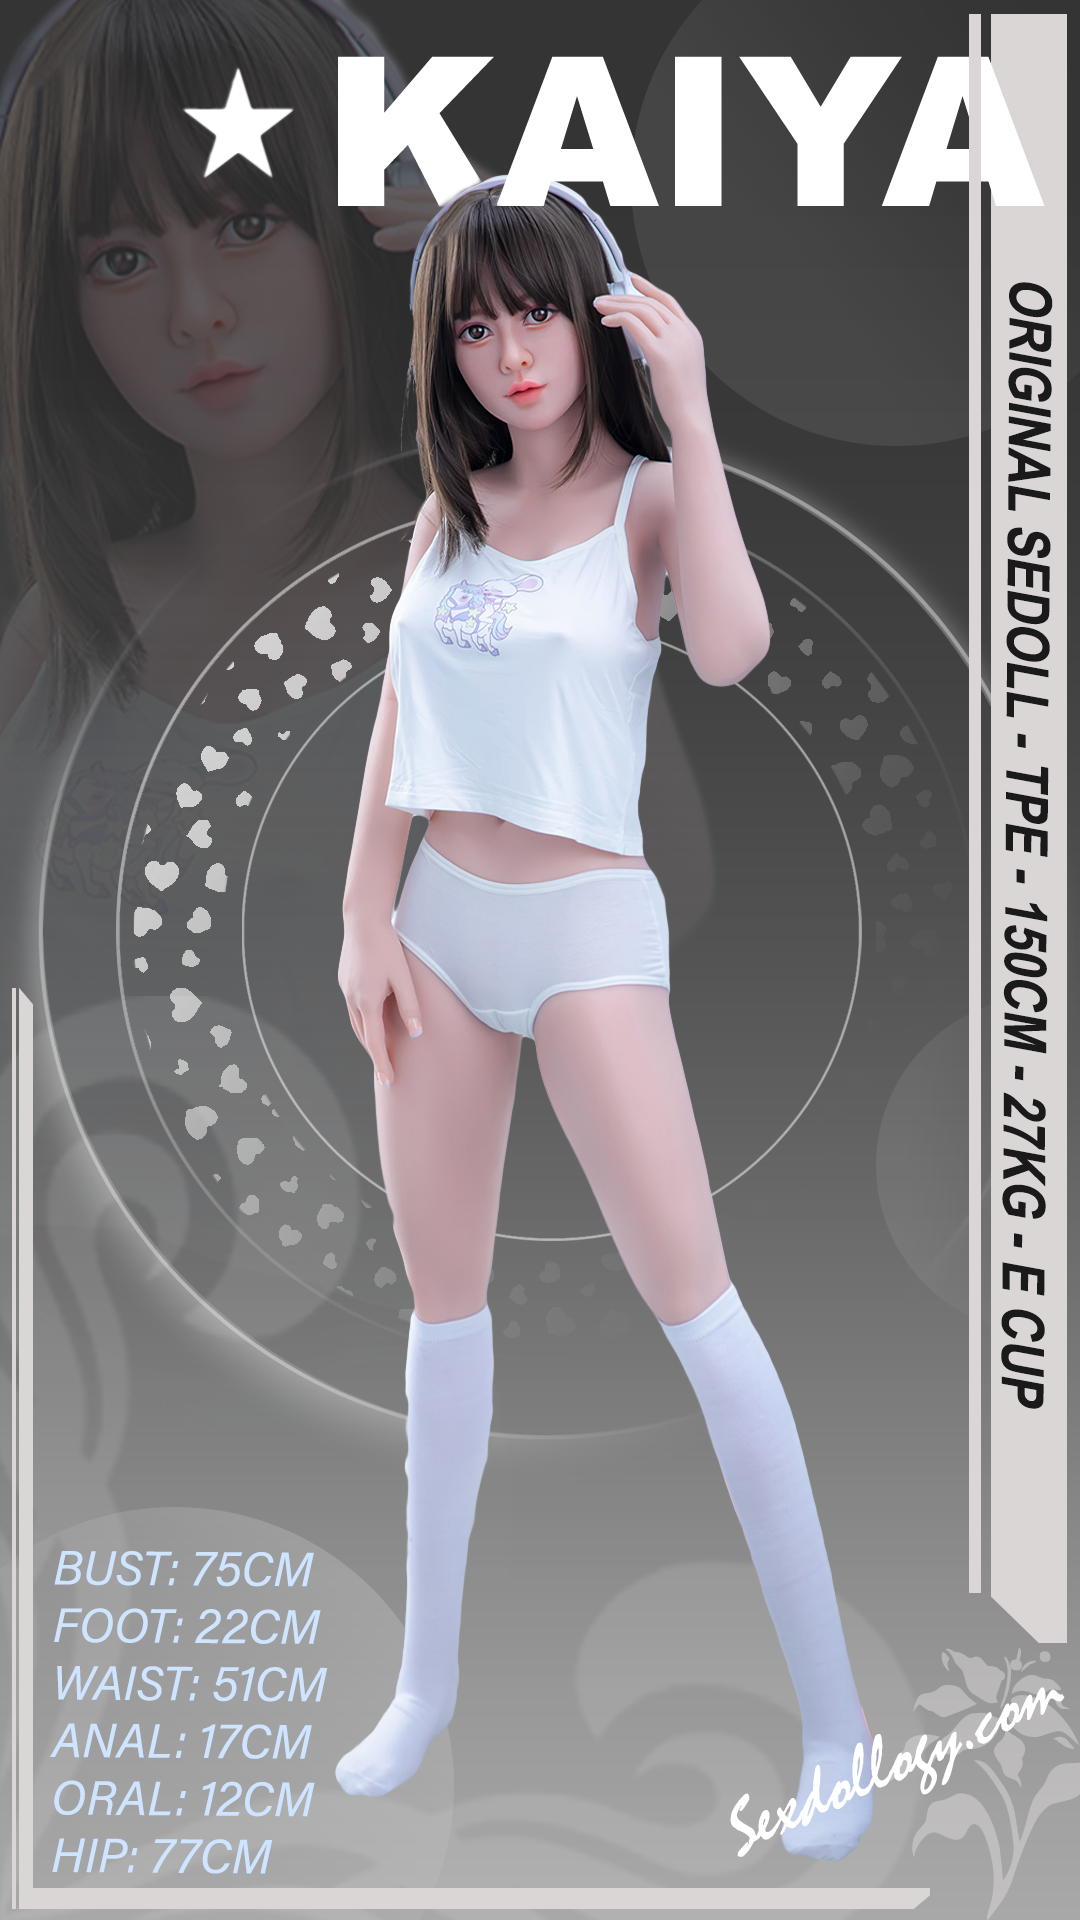 Kaiya Sex Doll Poster